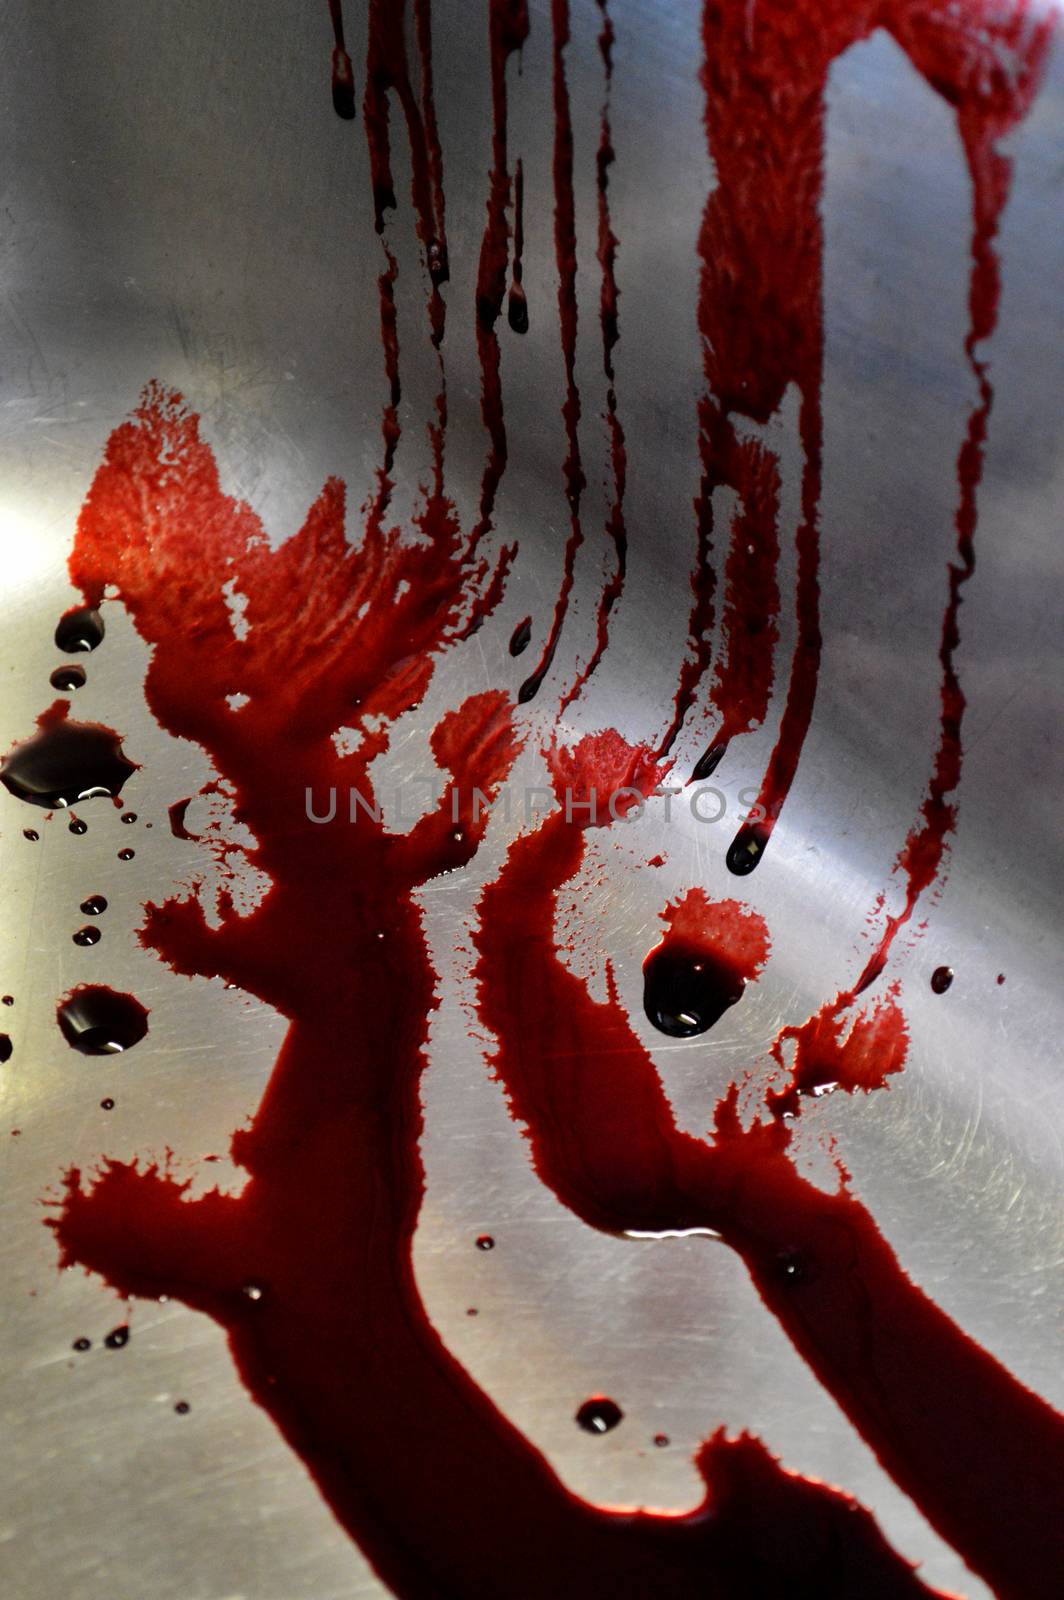 Blood splatter by fxmdk